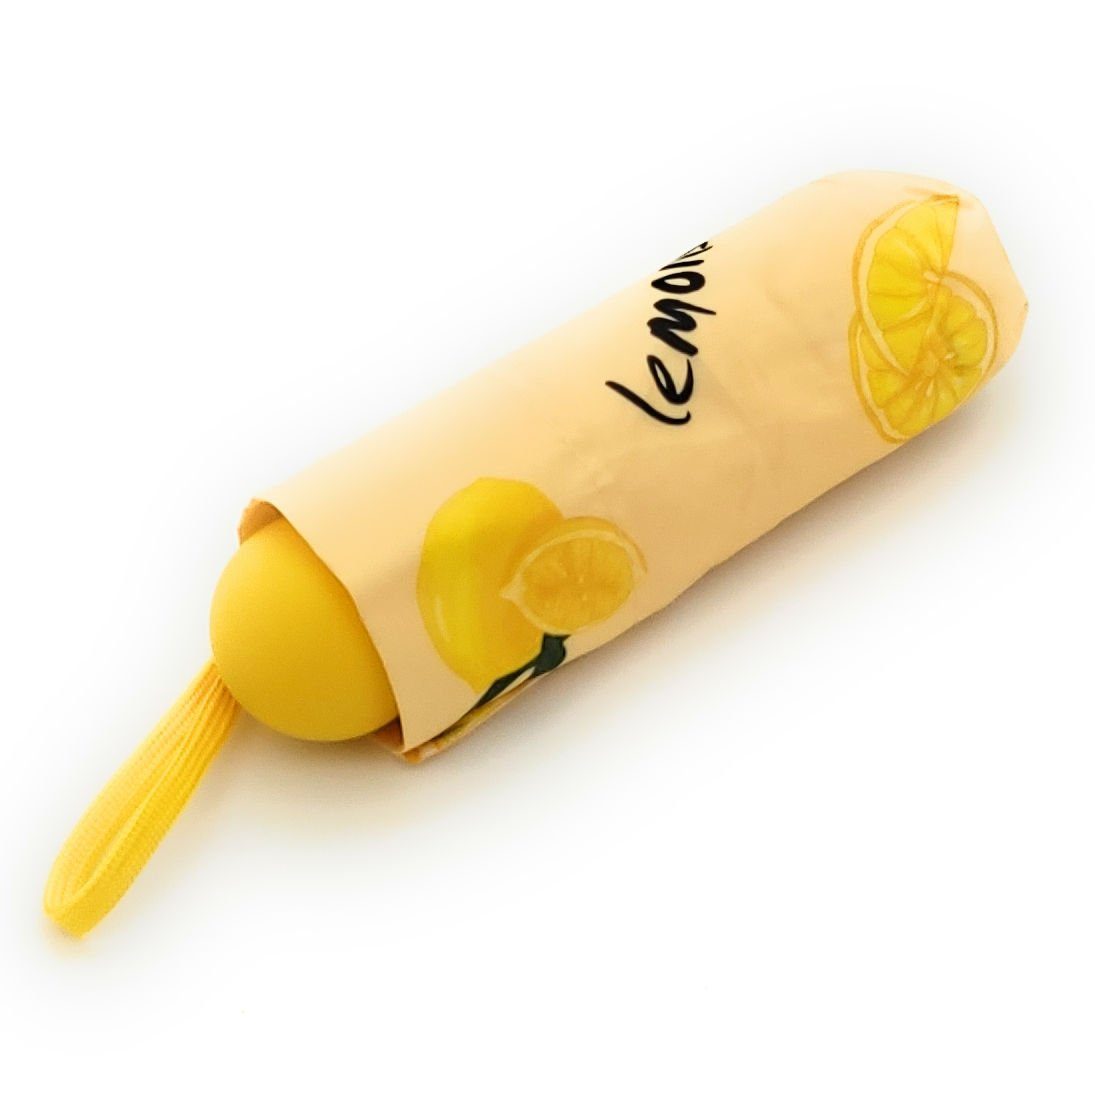 Dr. kompakt klein Mini Neuser Taschenregenschirm & Zitronen fröhliche Lemons Regenschirm bunt,